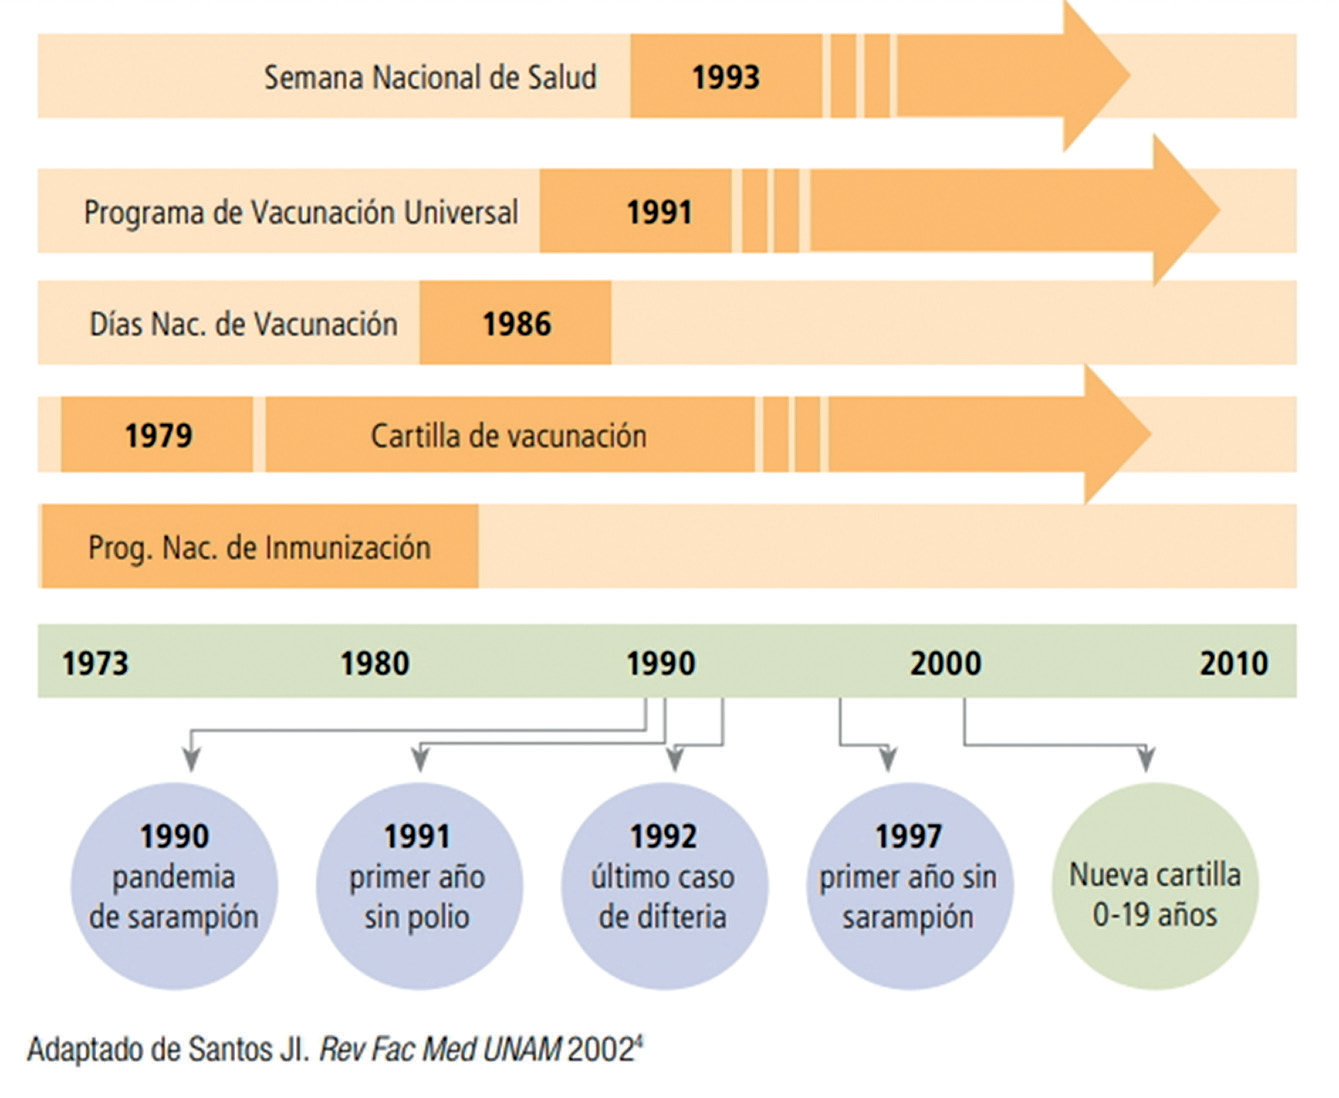 Figura 3. Evolución de la vacunación universal en México. Tomada de https://www.gob.mx/cms/uploads/attachment/file/400159/Varios_-_Historia_y_avances_de_la_vacunaci_n_en_M_xico.pdf